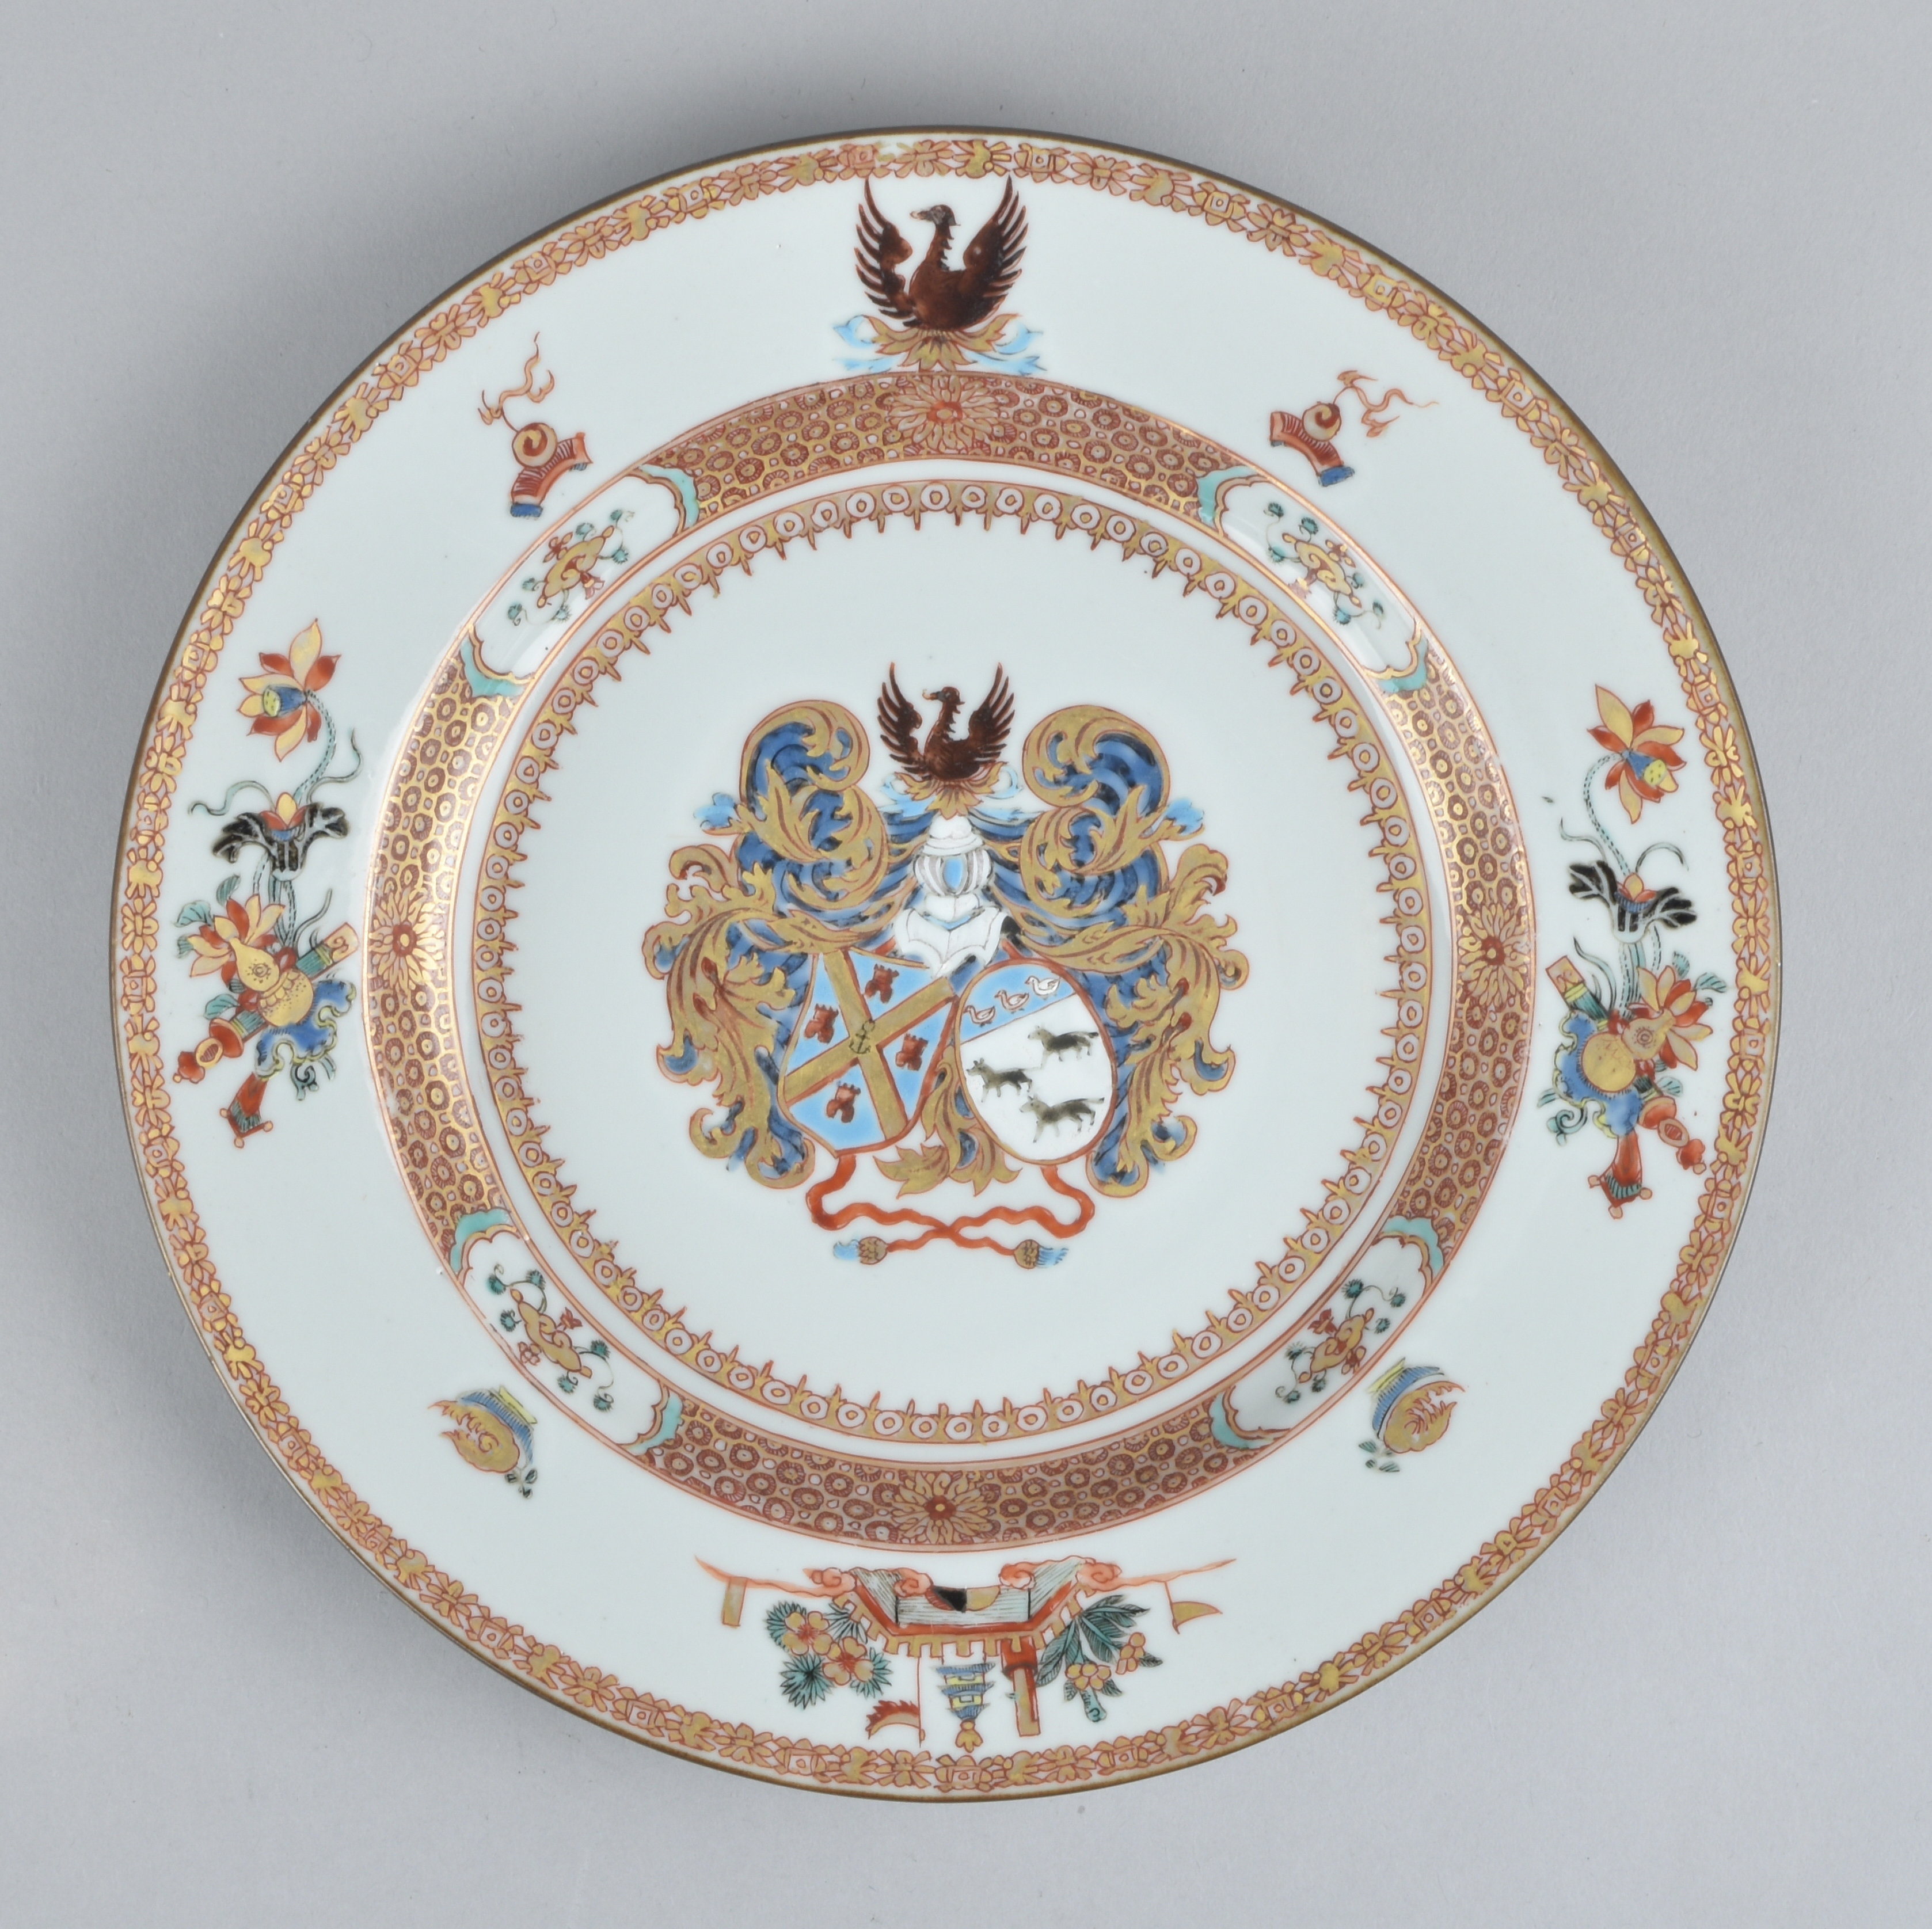 Porcelaine Yongzheng (1723-1735), circa 1725-1730, China